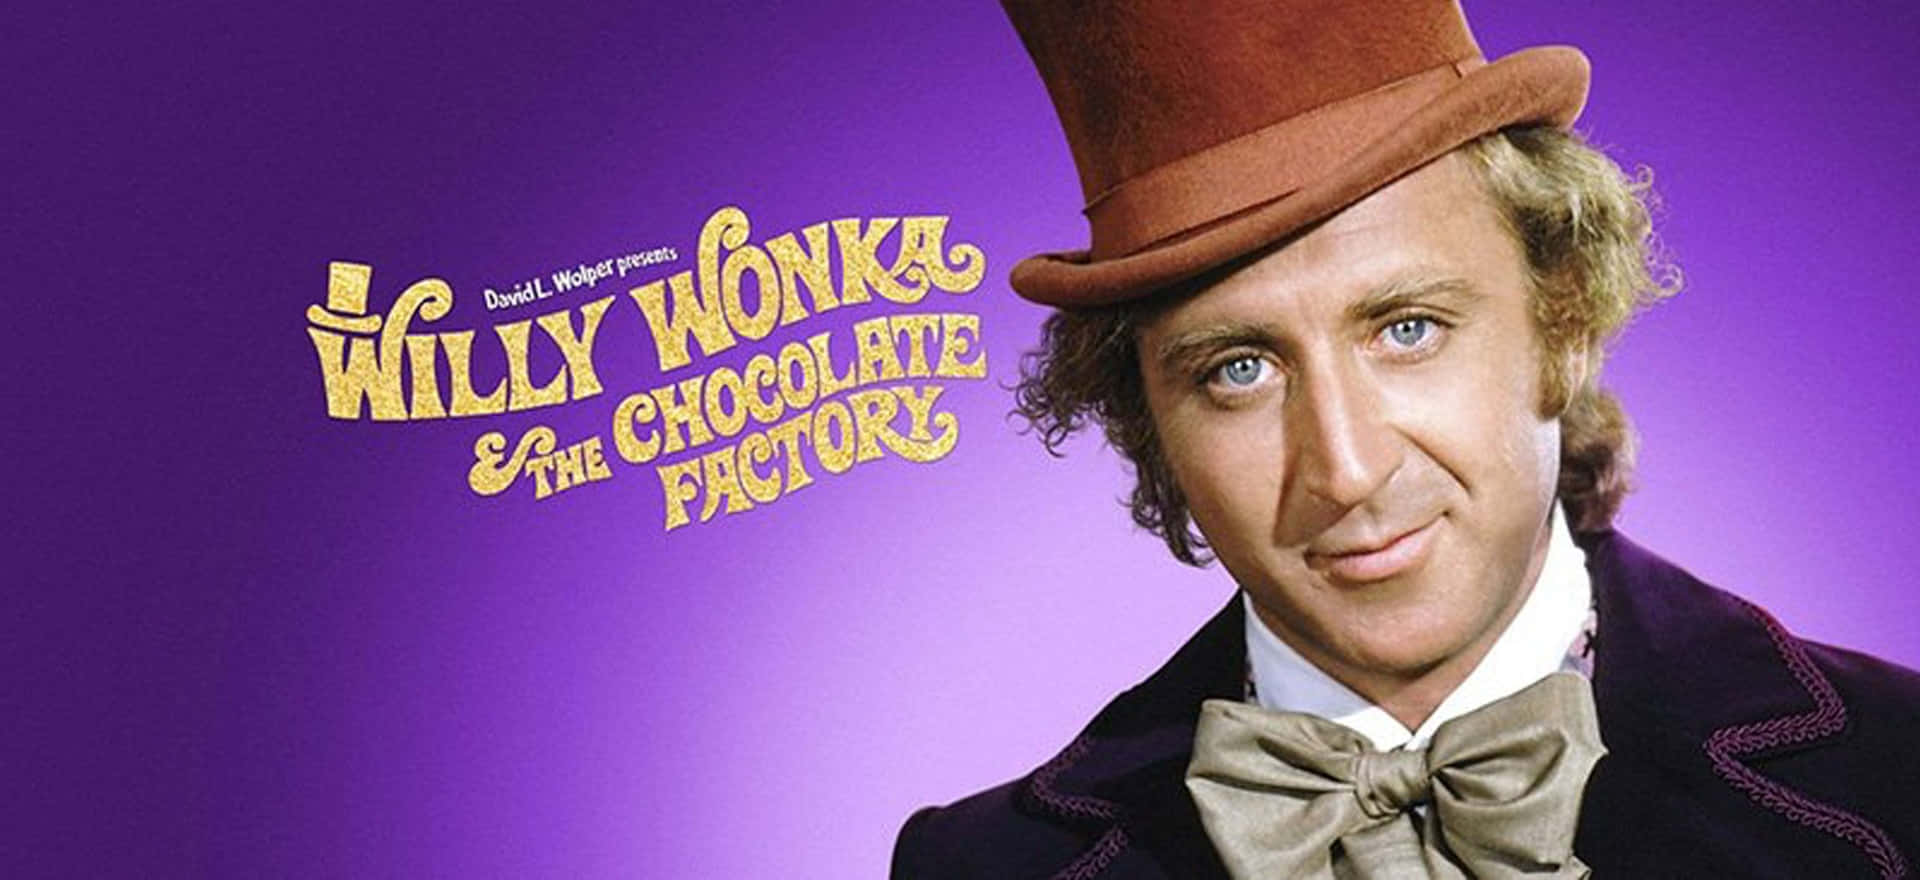 Charliee Willy Wonka Partono Per Un Viaggio Magico